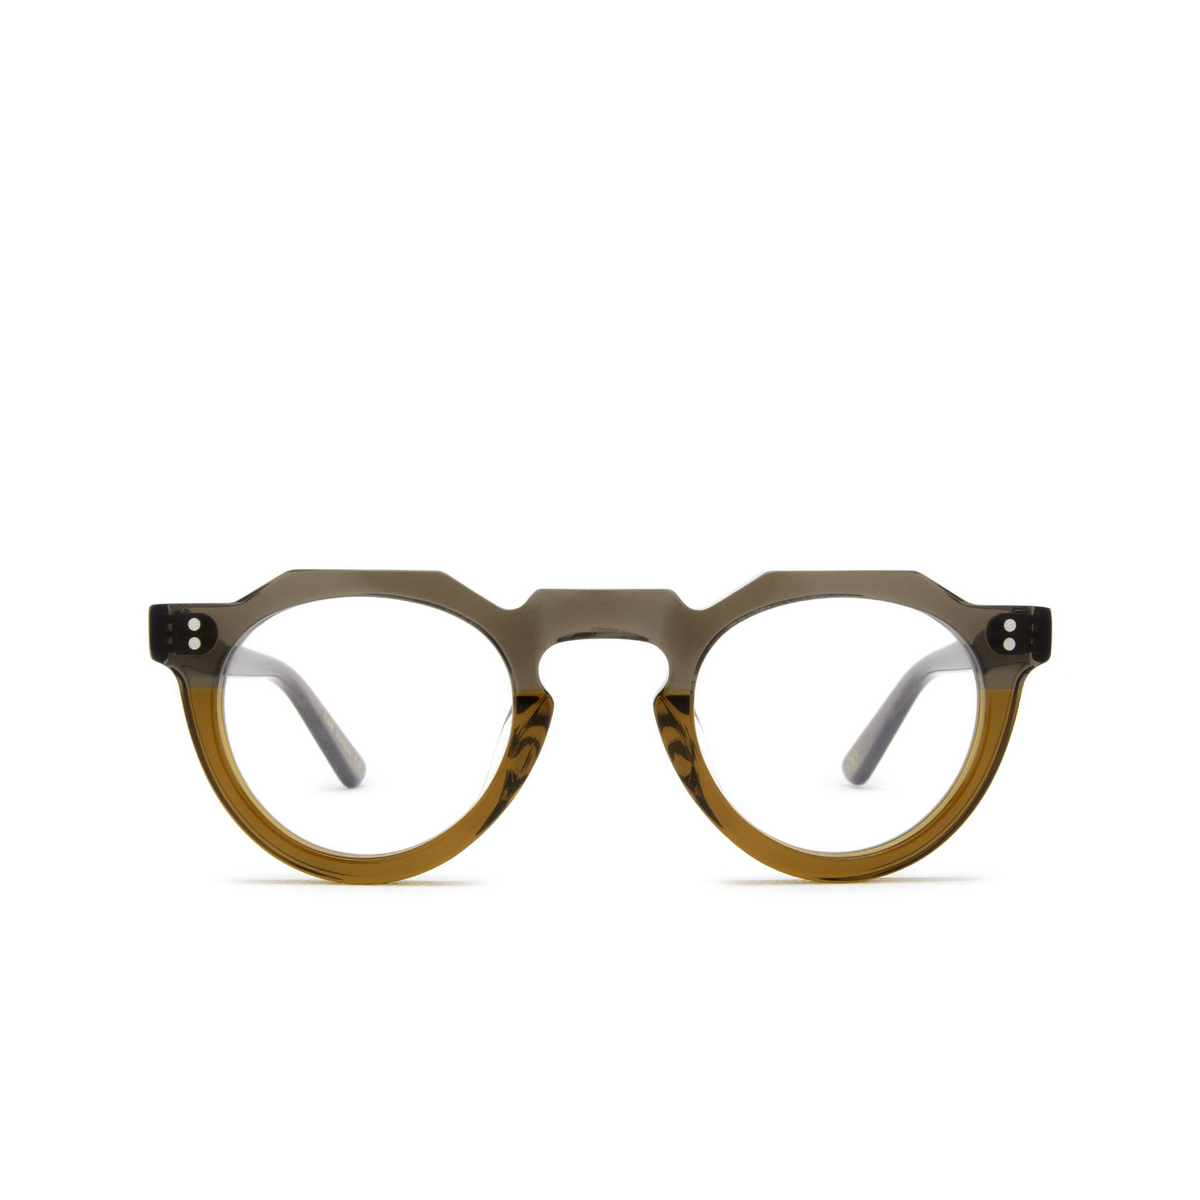 Lesca® Irregular Eyeglasses: Pica color Grey / Cognac - front view.